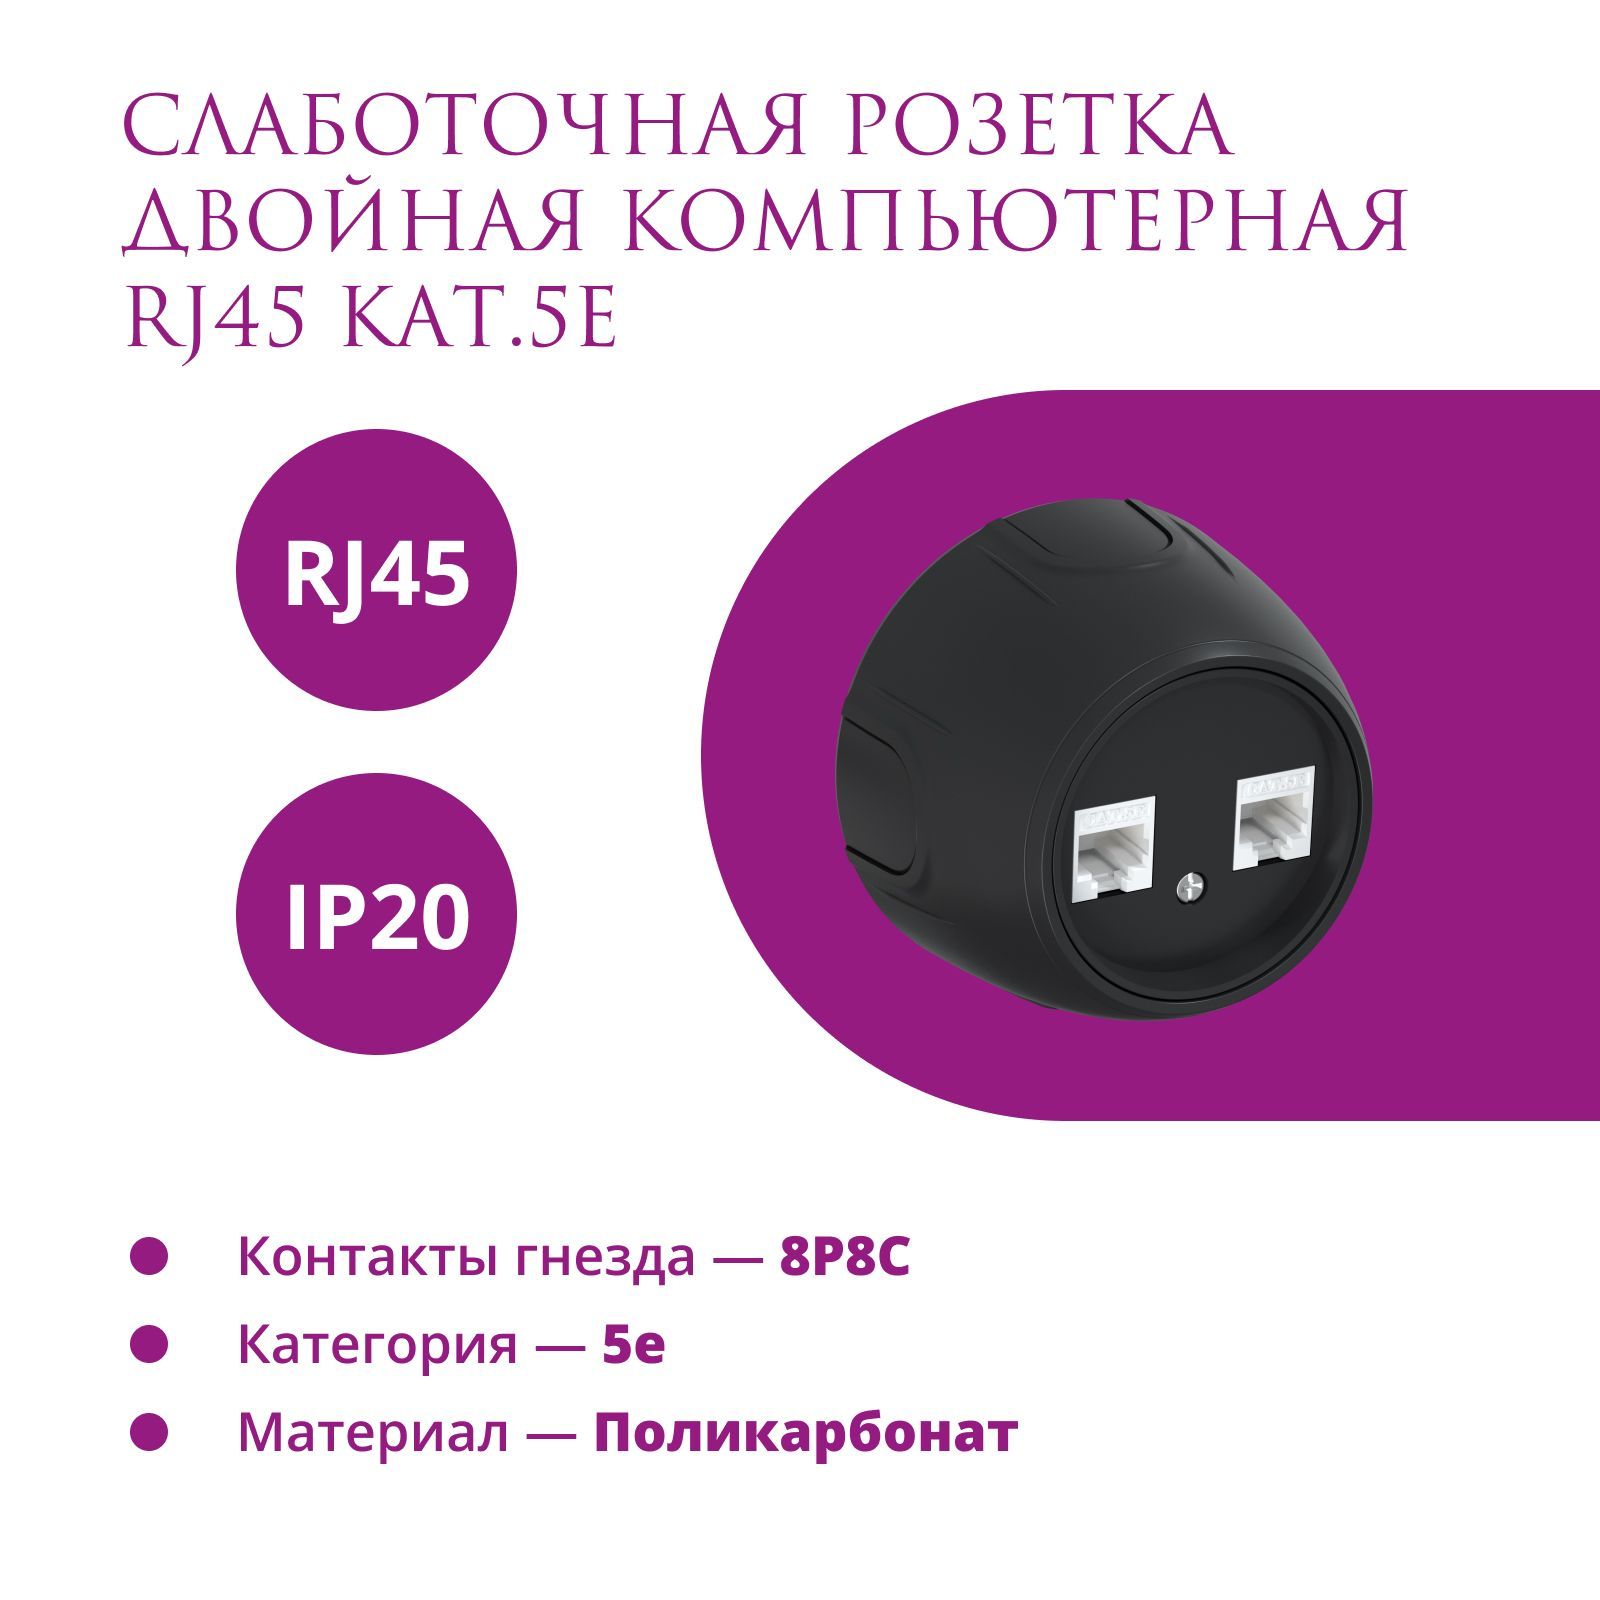 Розетка двойная компьютерная RJ45 кат.5e OneKeyElectro (Rotondo), цвет черный розетка двойная компьютерная onekeyelectro rj45 5e цвет серый